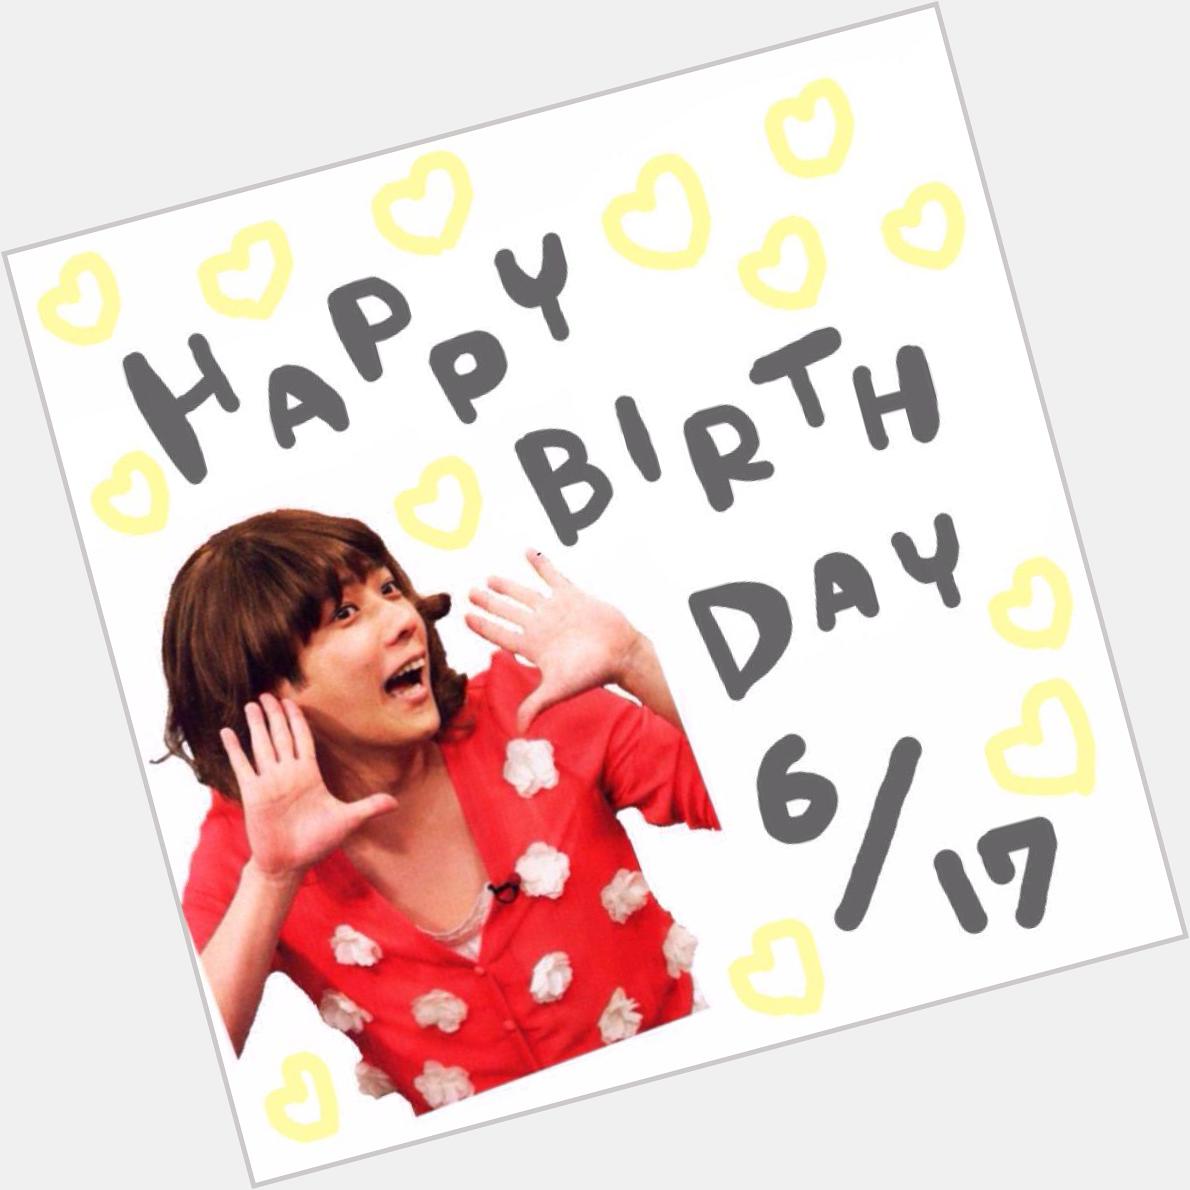   Happy Birthday   6 .17 Kazunari Ninomiya                                                                 